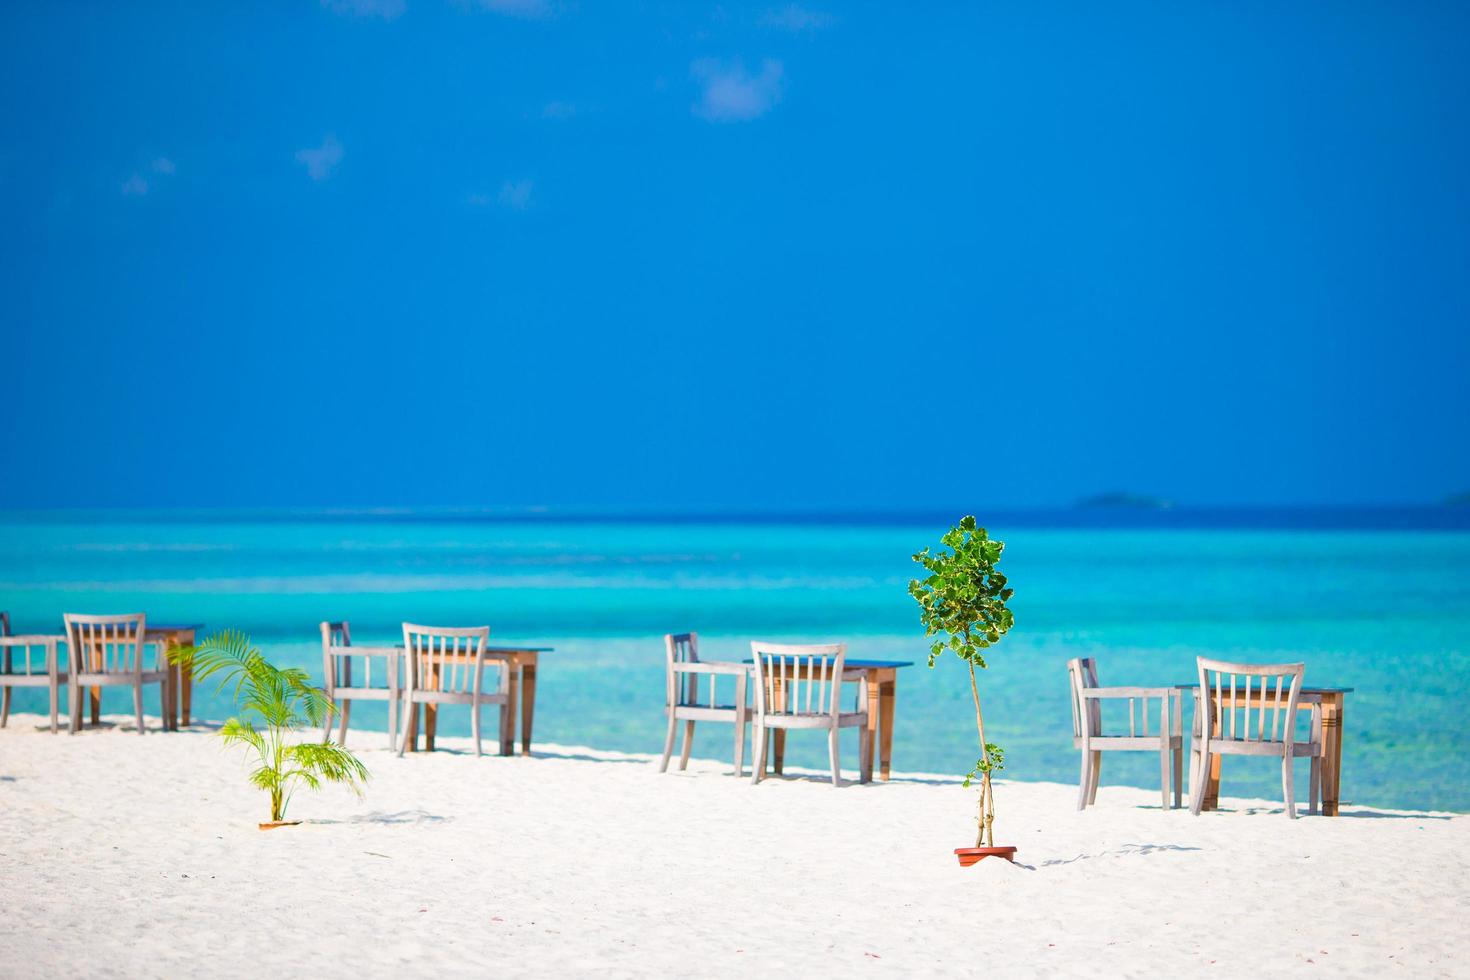 maldives, asie du sud, 2020 - café en plein air vide près de la mer photo